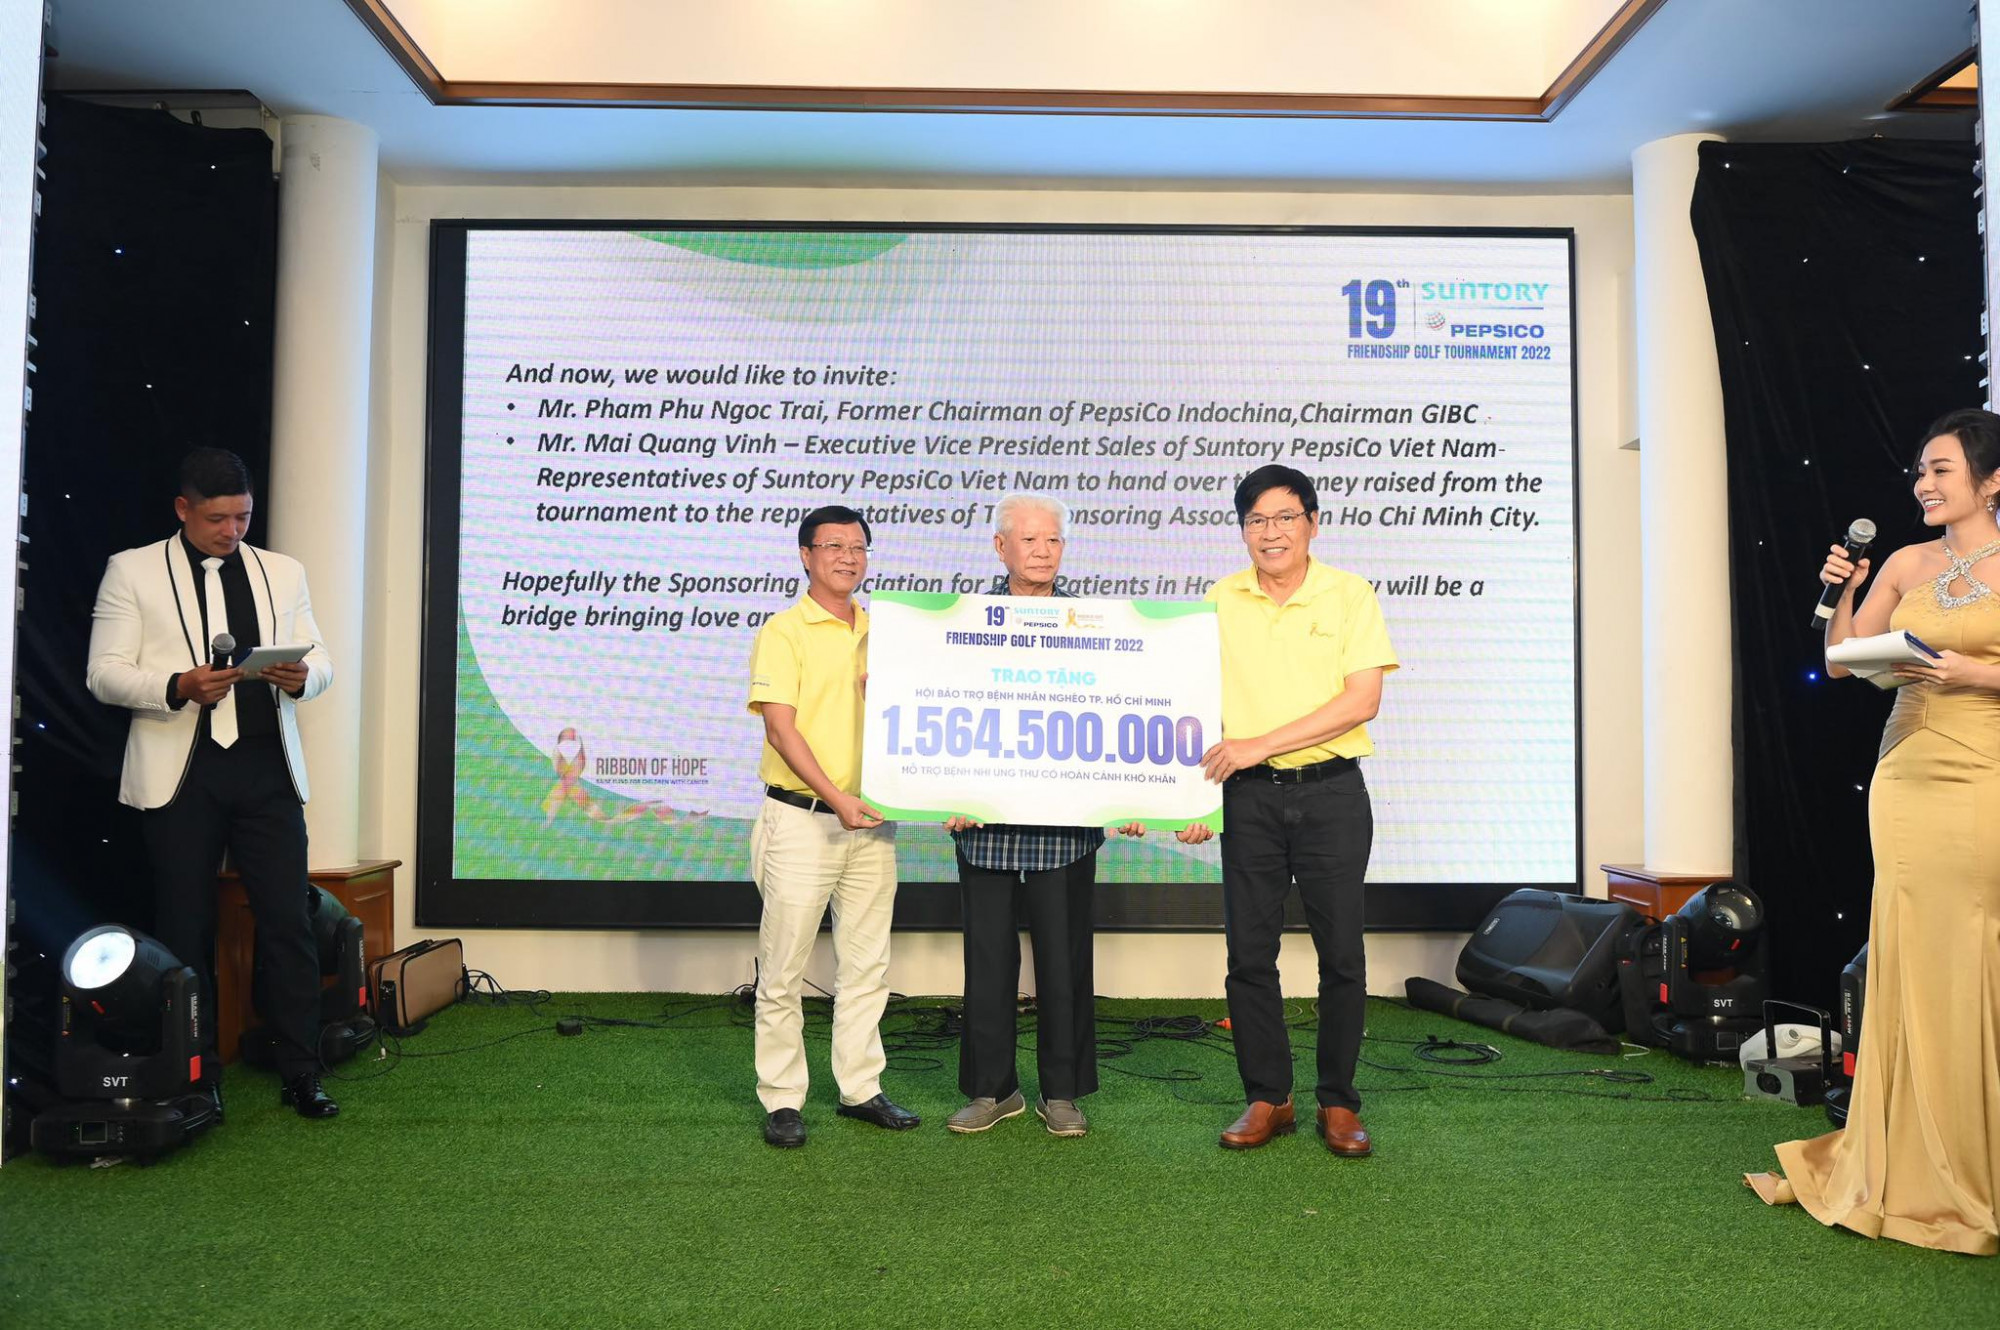 đại diện Suntory PepsiCo trao số tiền gây quỹ được từ giải đấu Golf Hữu Nghị lần thứ 19 cho Hội bảo trợ bệnh nhân nghèo Thành Phố Hồ Chí Minh, số tiền này sẽ được ủng hộ cho các bệnh nhi mắc bệnh ung thư.